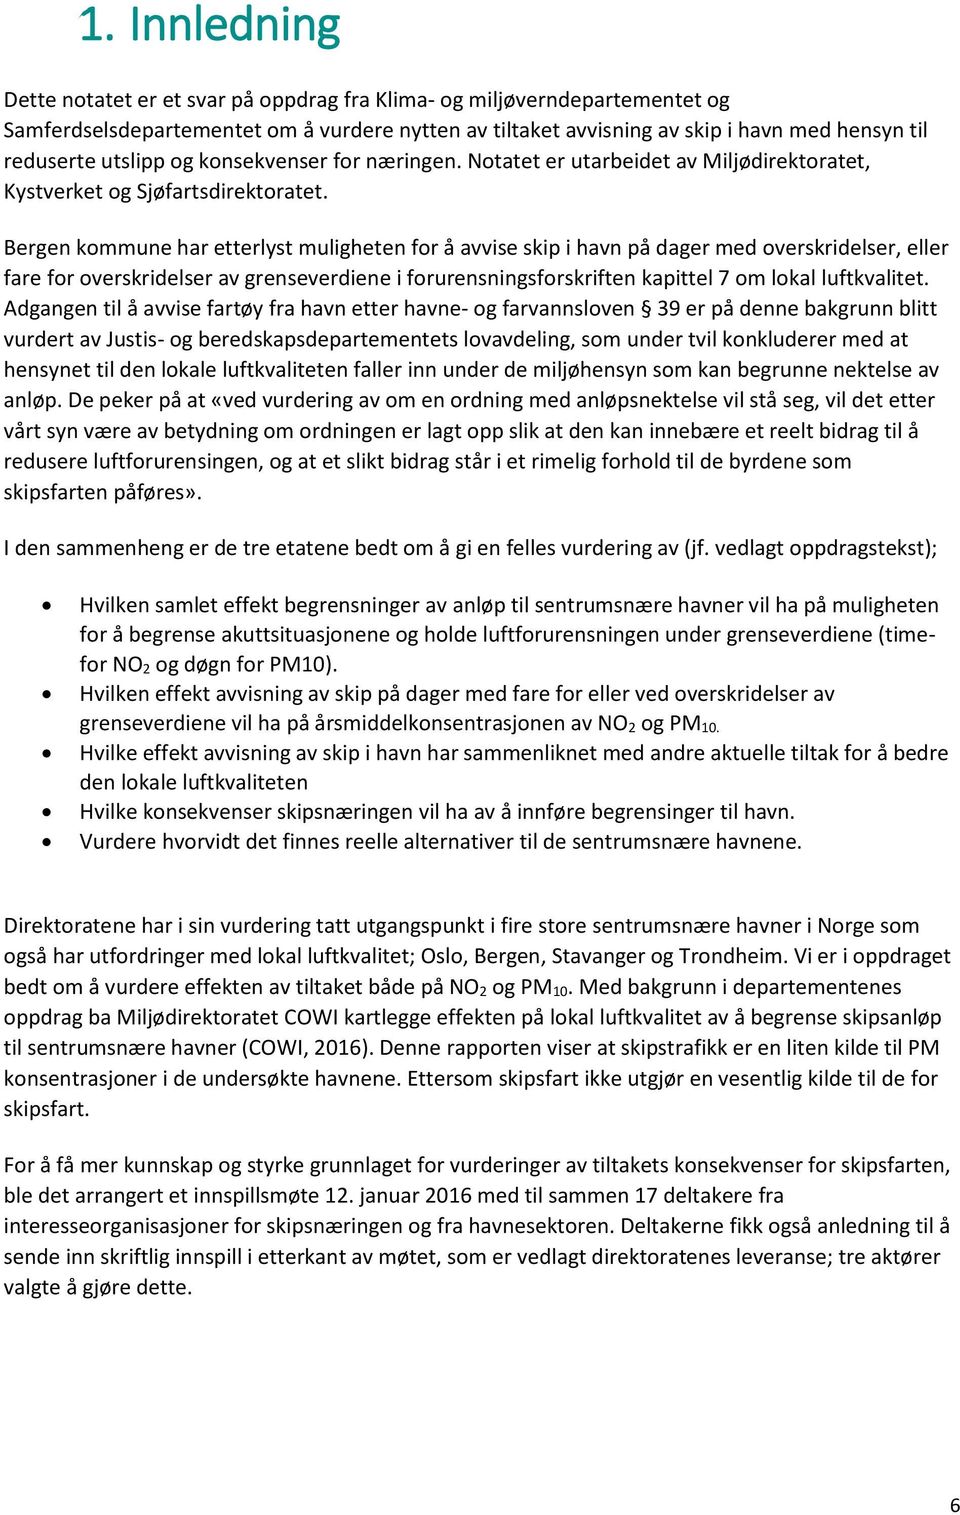 Bergen kommune har etterlyst muligheten for å avvise skip i havn på dager med overskridelser, eller fare for overskridelser av grenseverdiene i forurensningsforskriften kapittel 7 om lokal